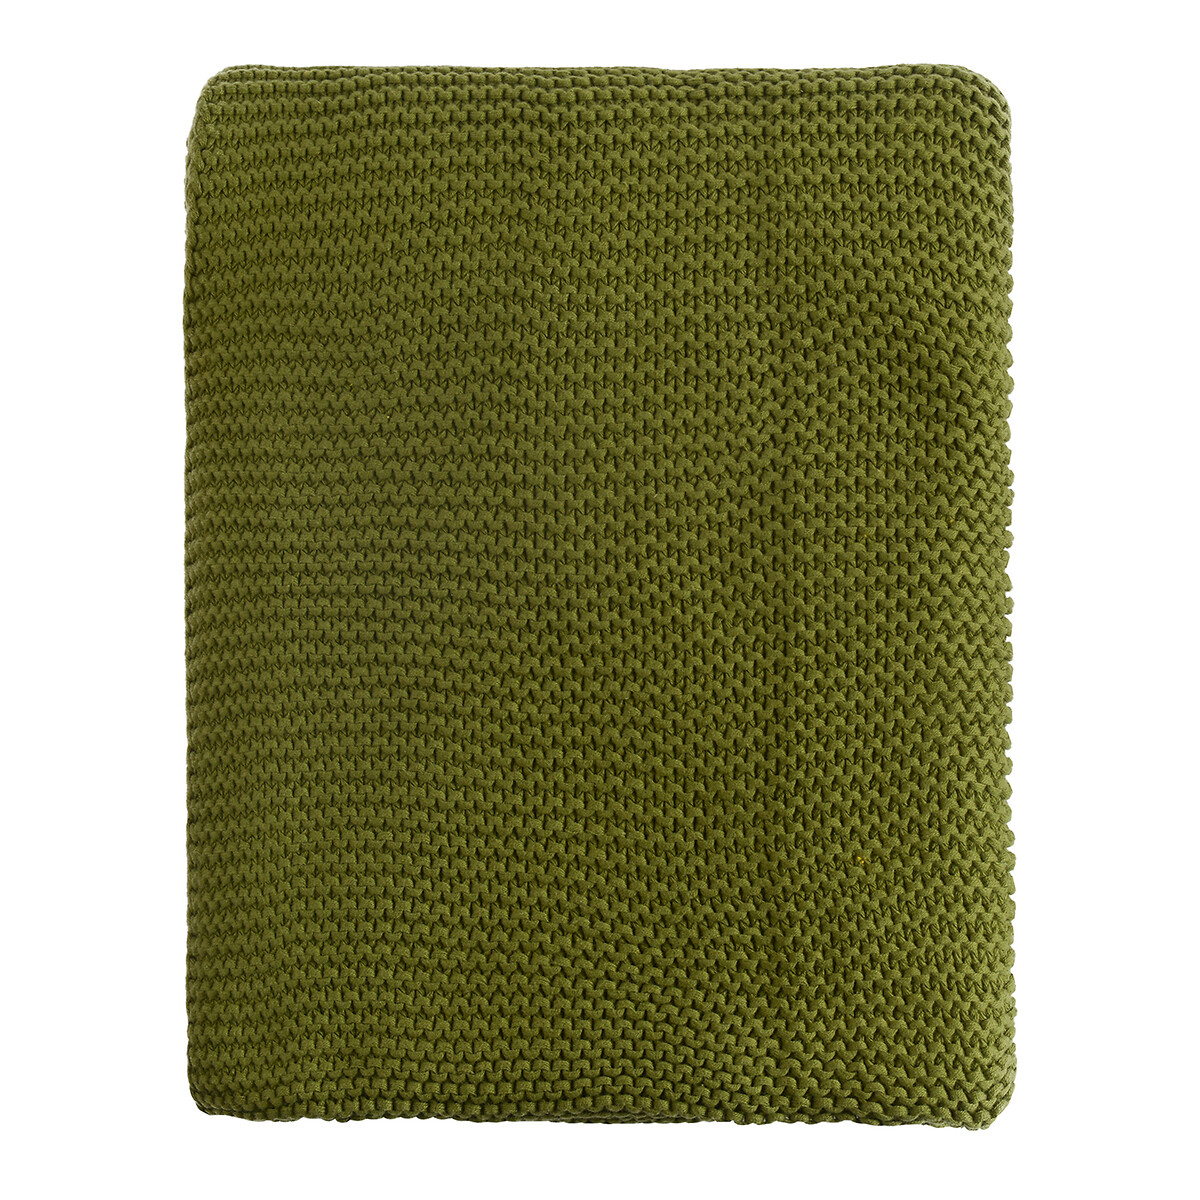 Плед Из хлопка жемчужной вязки Essential 130 x 180 см зеленый LaRedoute, размер 130 x 180 см